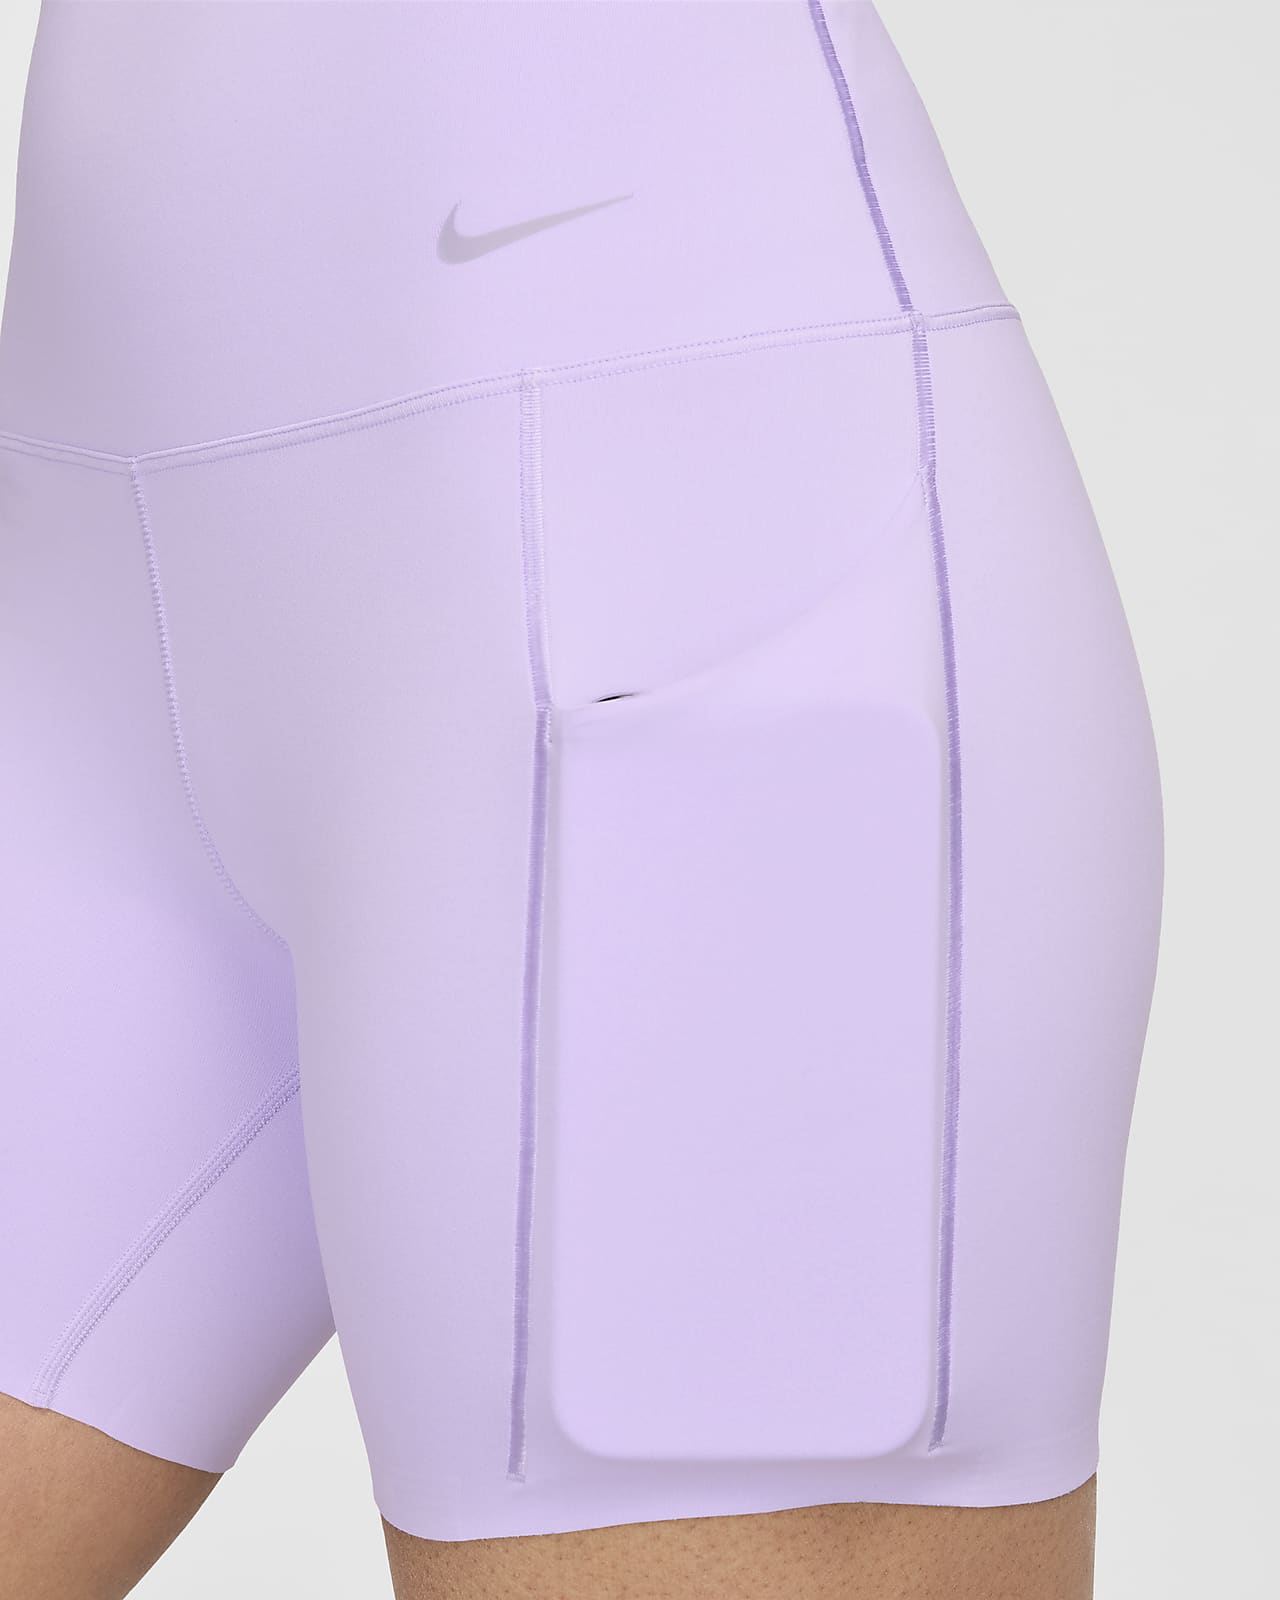 Nike Women's Universa Medium-Support High-Waisted 8 Biker Shorts